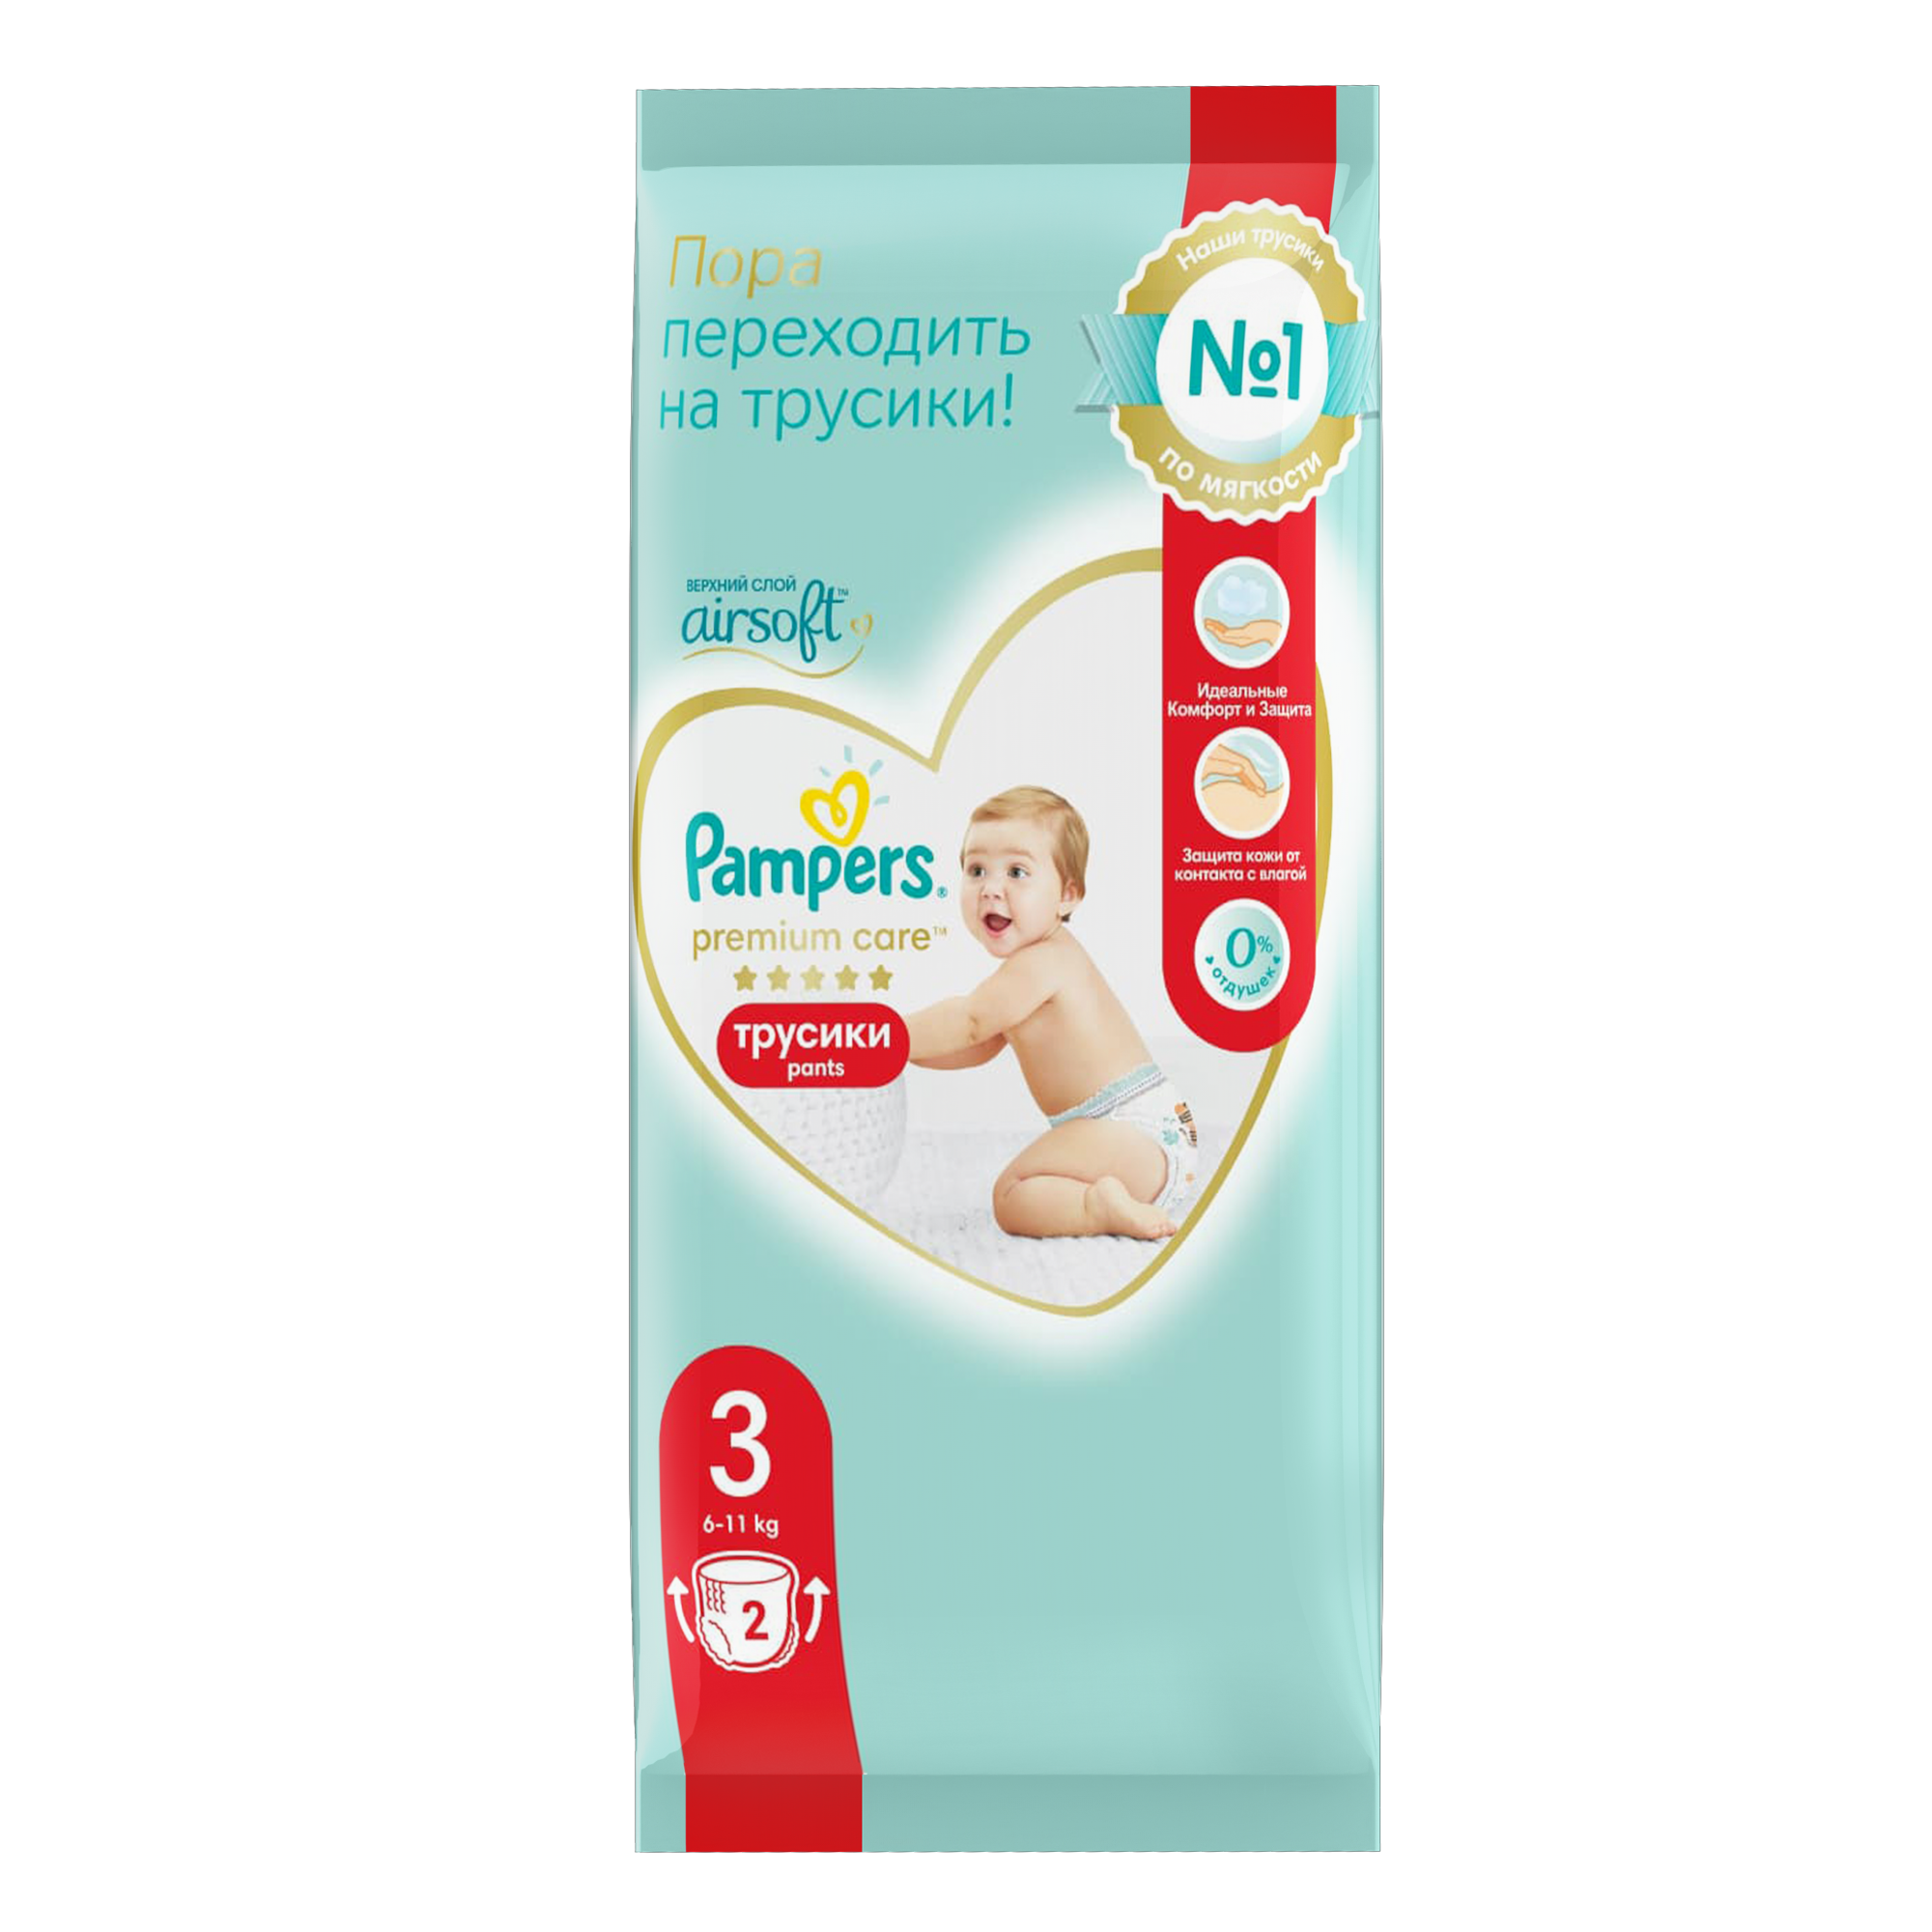 фото Подгузники-трусики pampers premium care для малышей 6-11 кг, 3 размер, 2 шт.